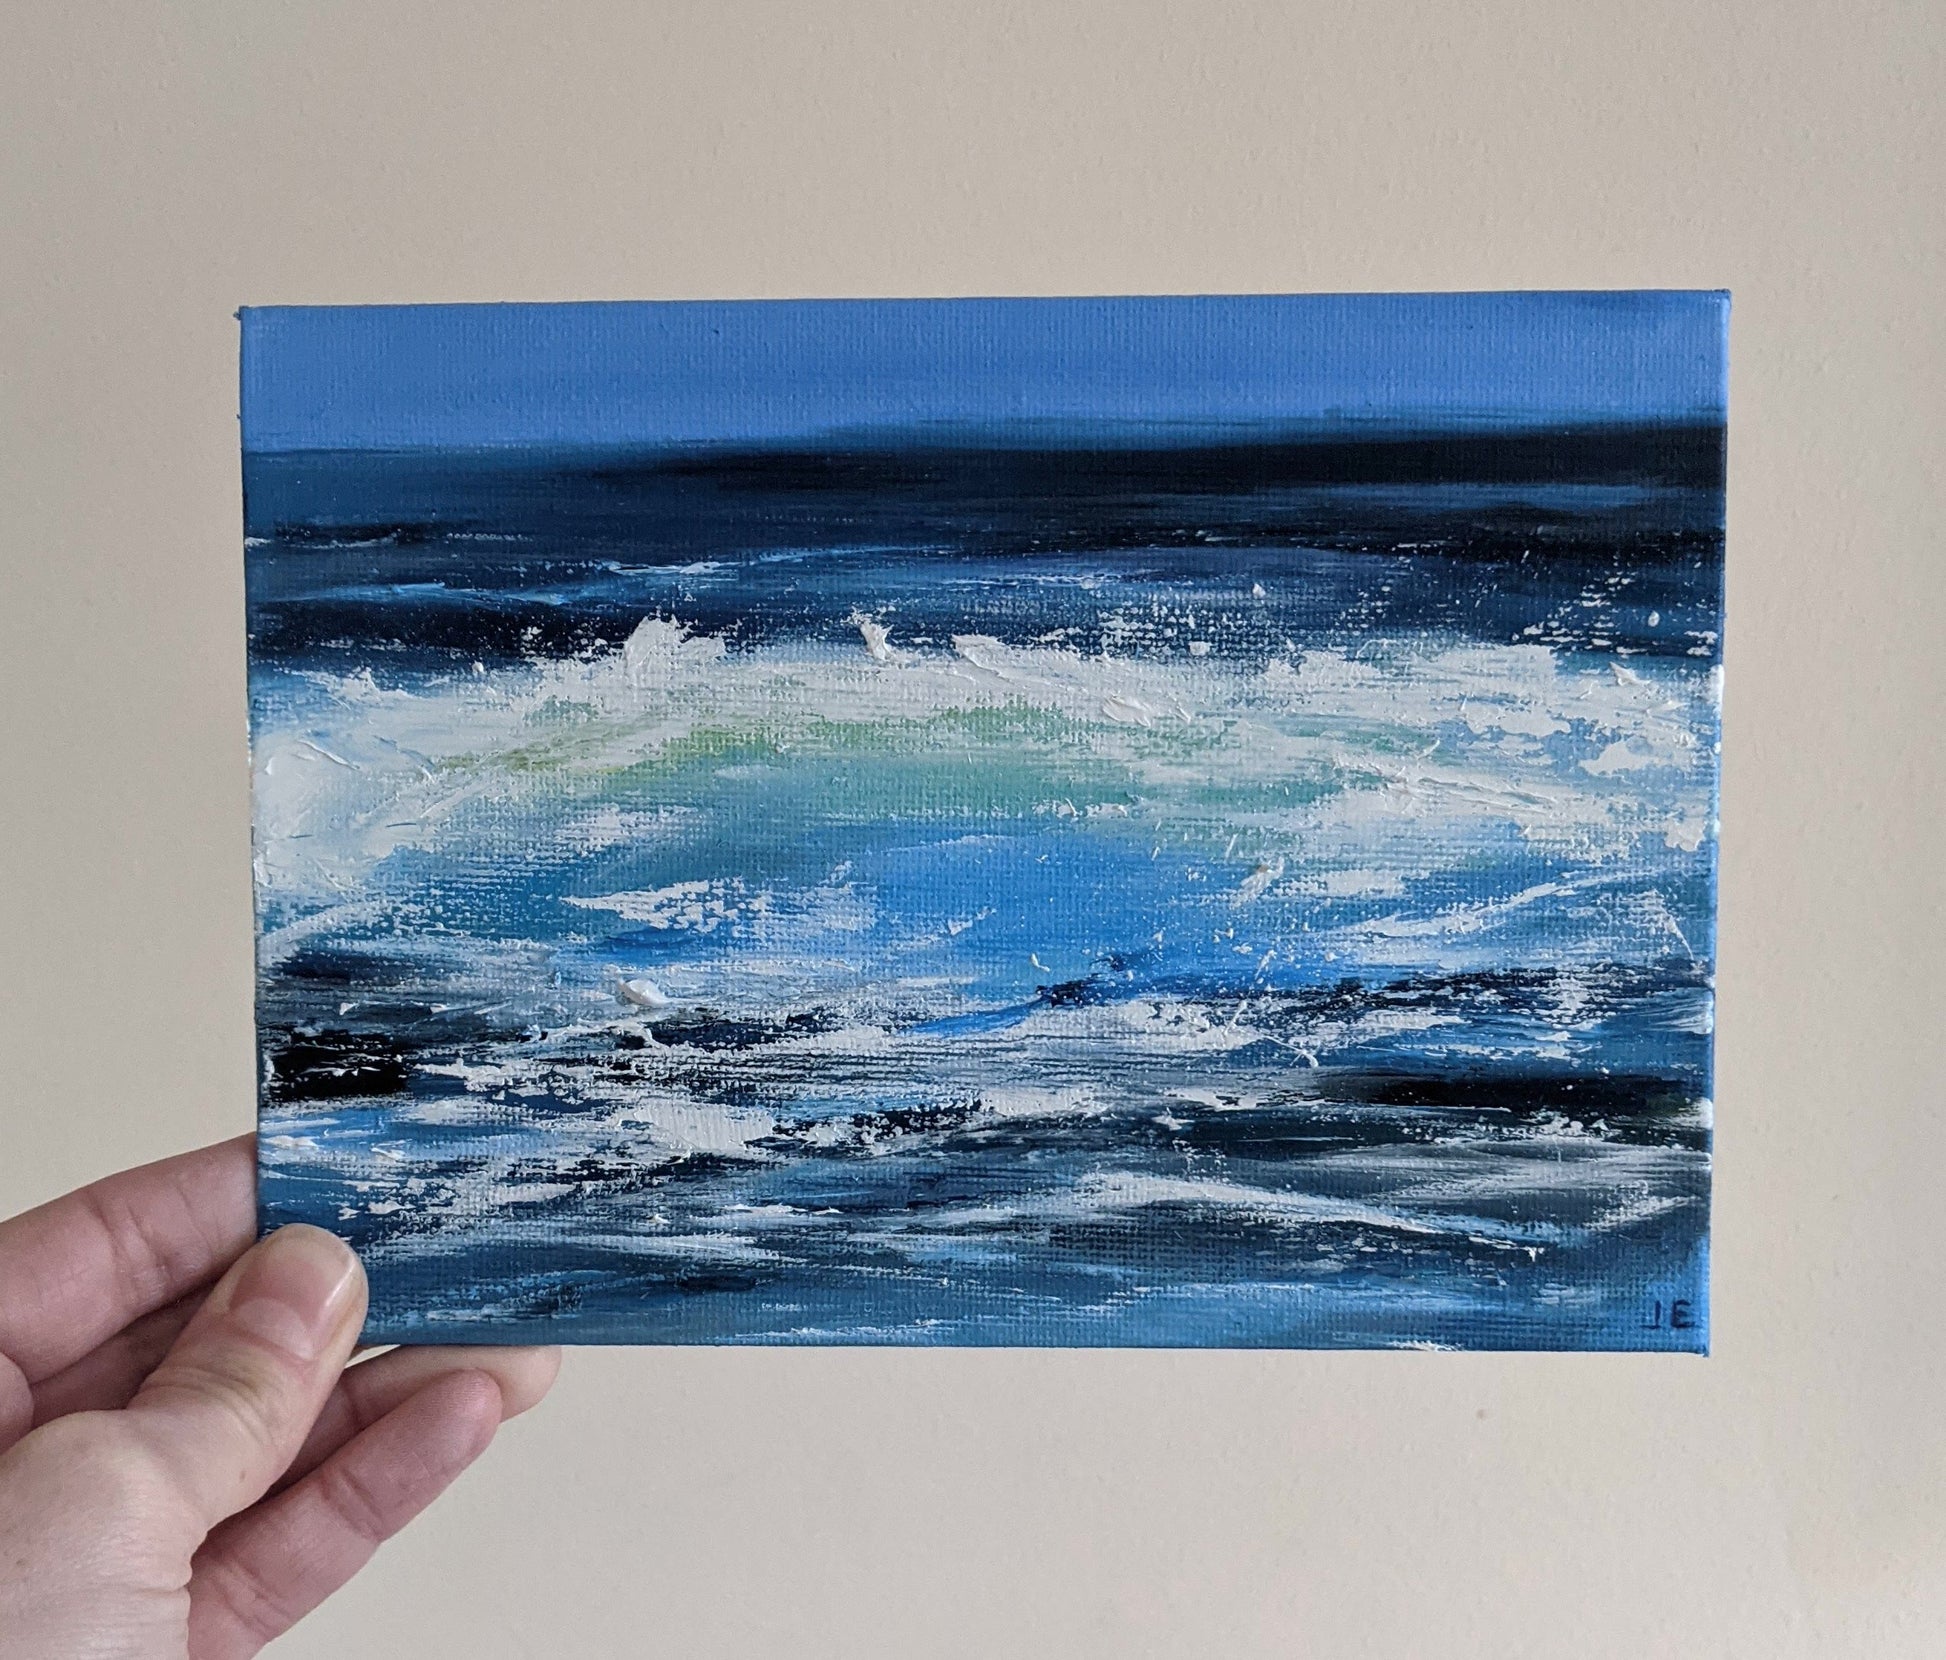 Miniature Wave Seascape #2 oil painting on canvas board in studio, by Jo Earl